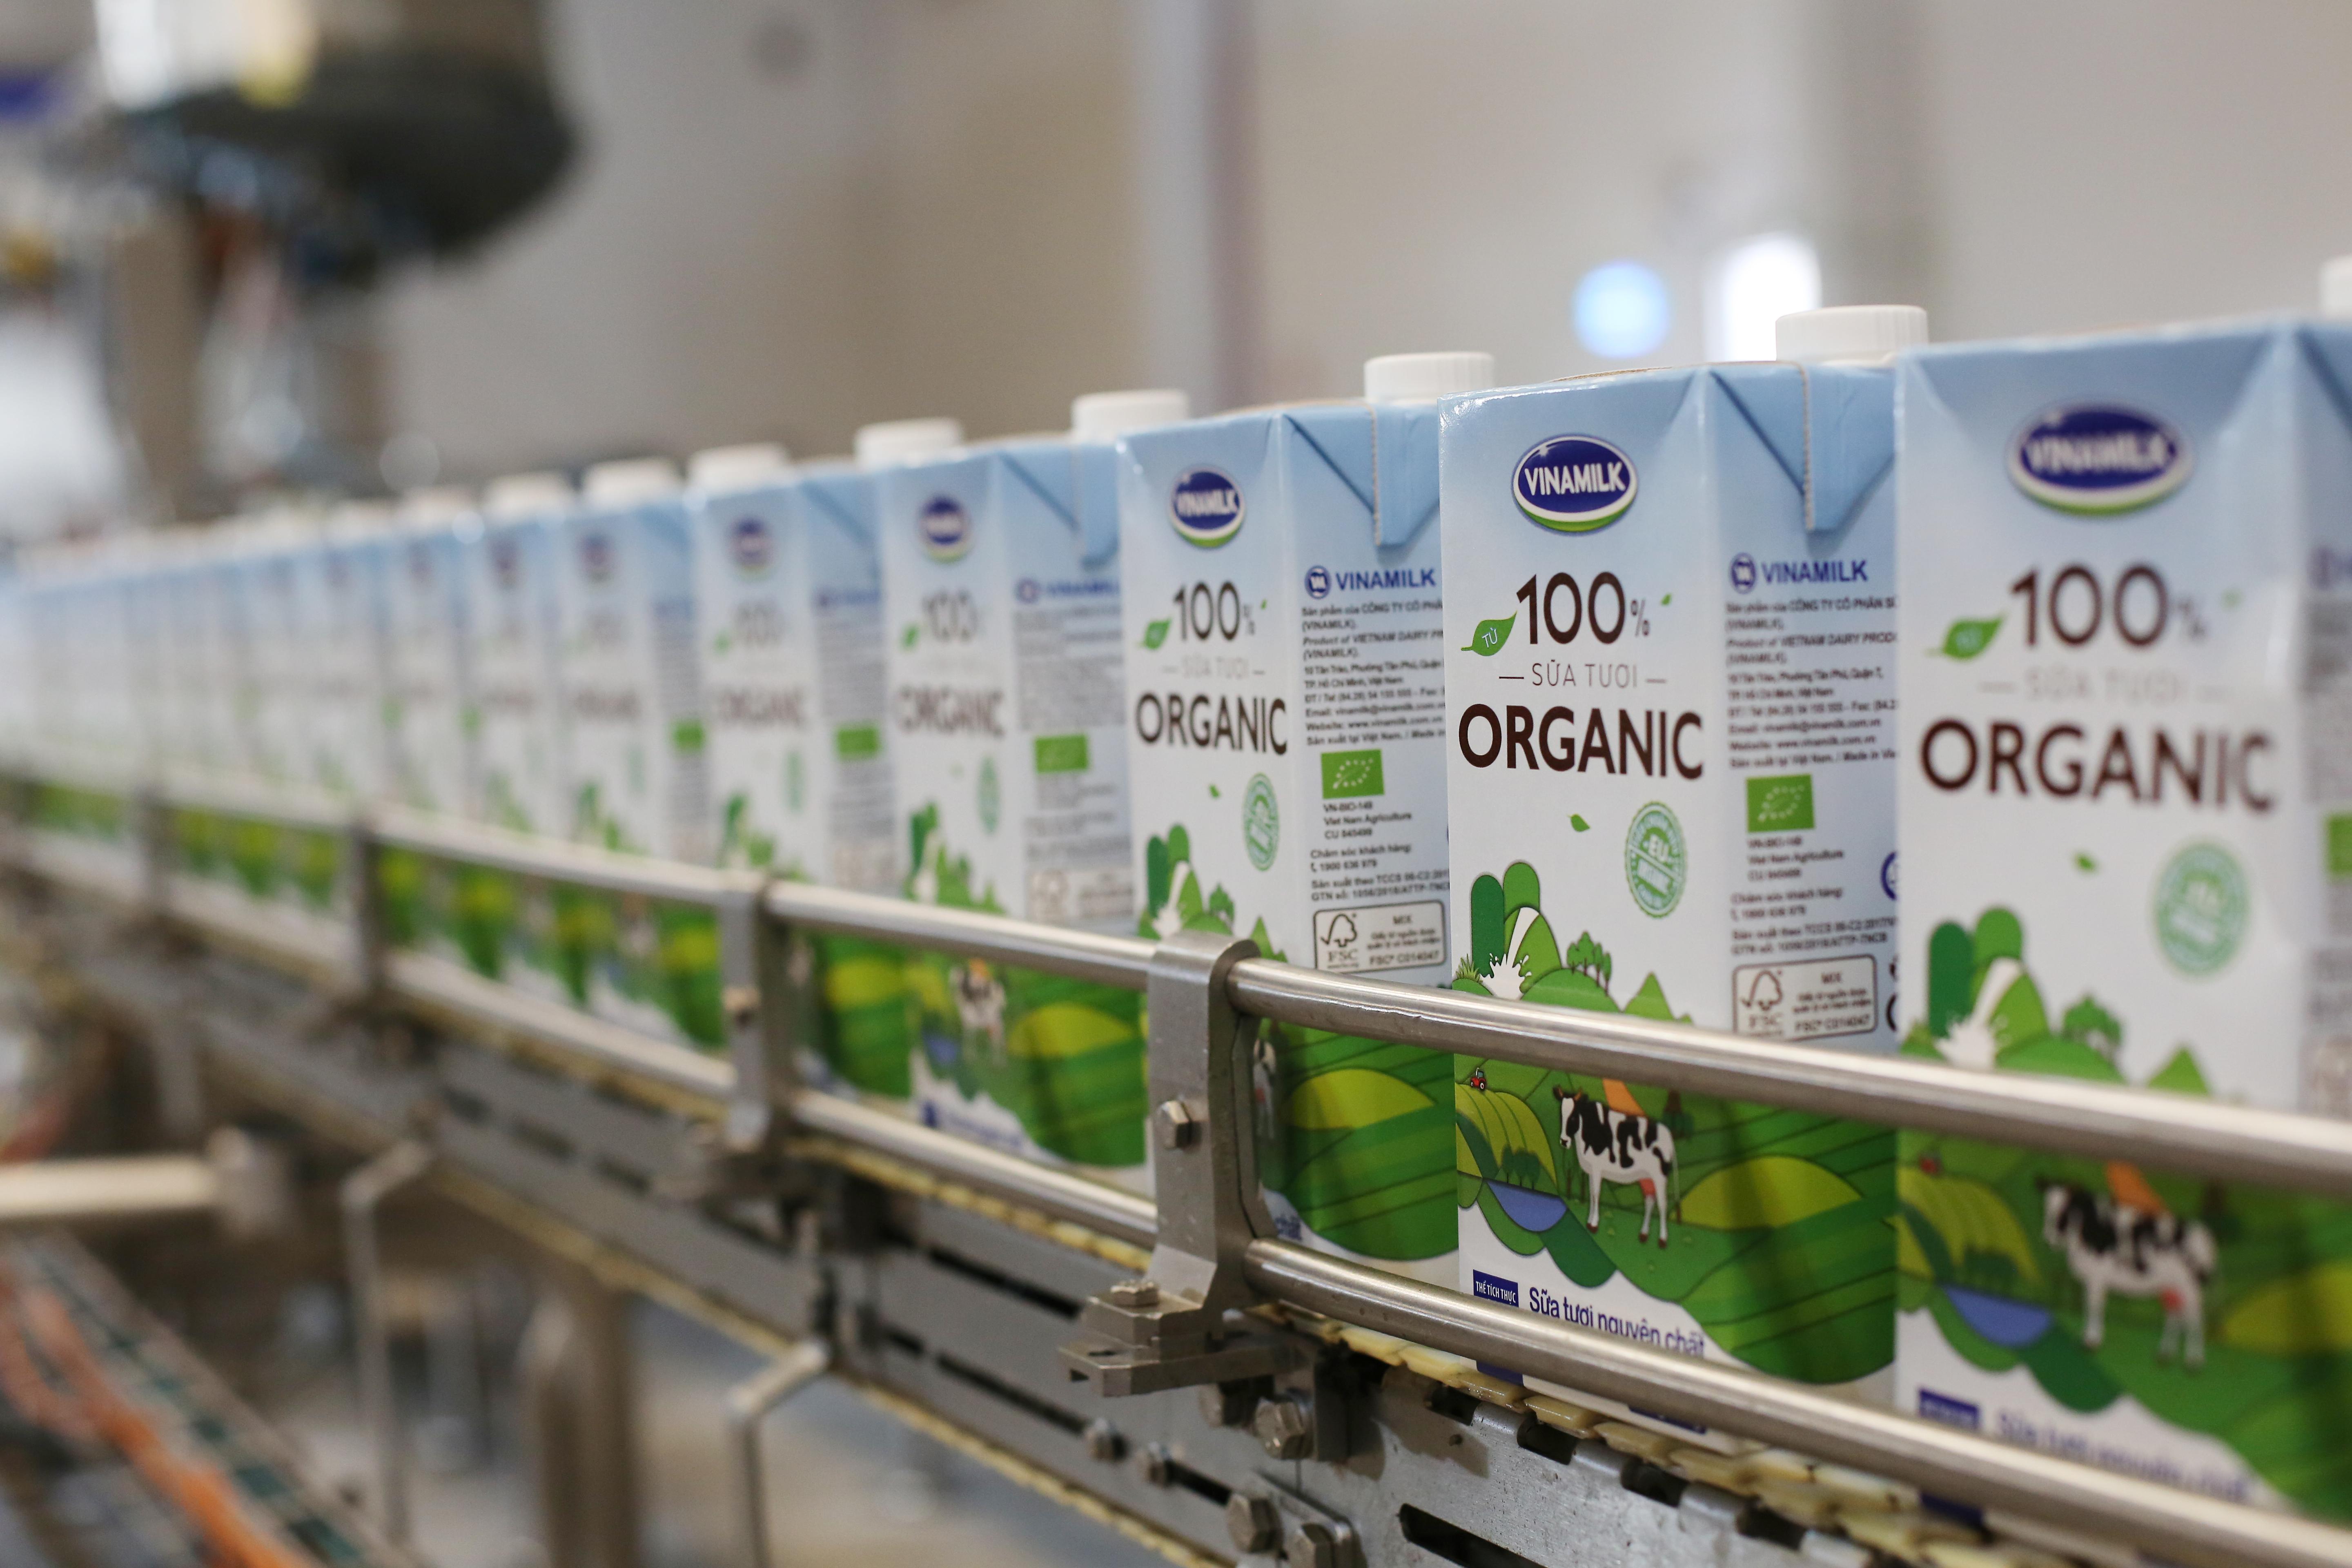 Có thể dễ dàng nhận biết logo “EU Organic” trên các hộp sữa organic của Vinamilk